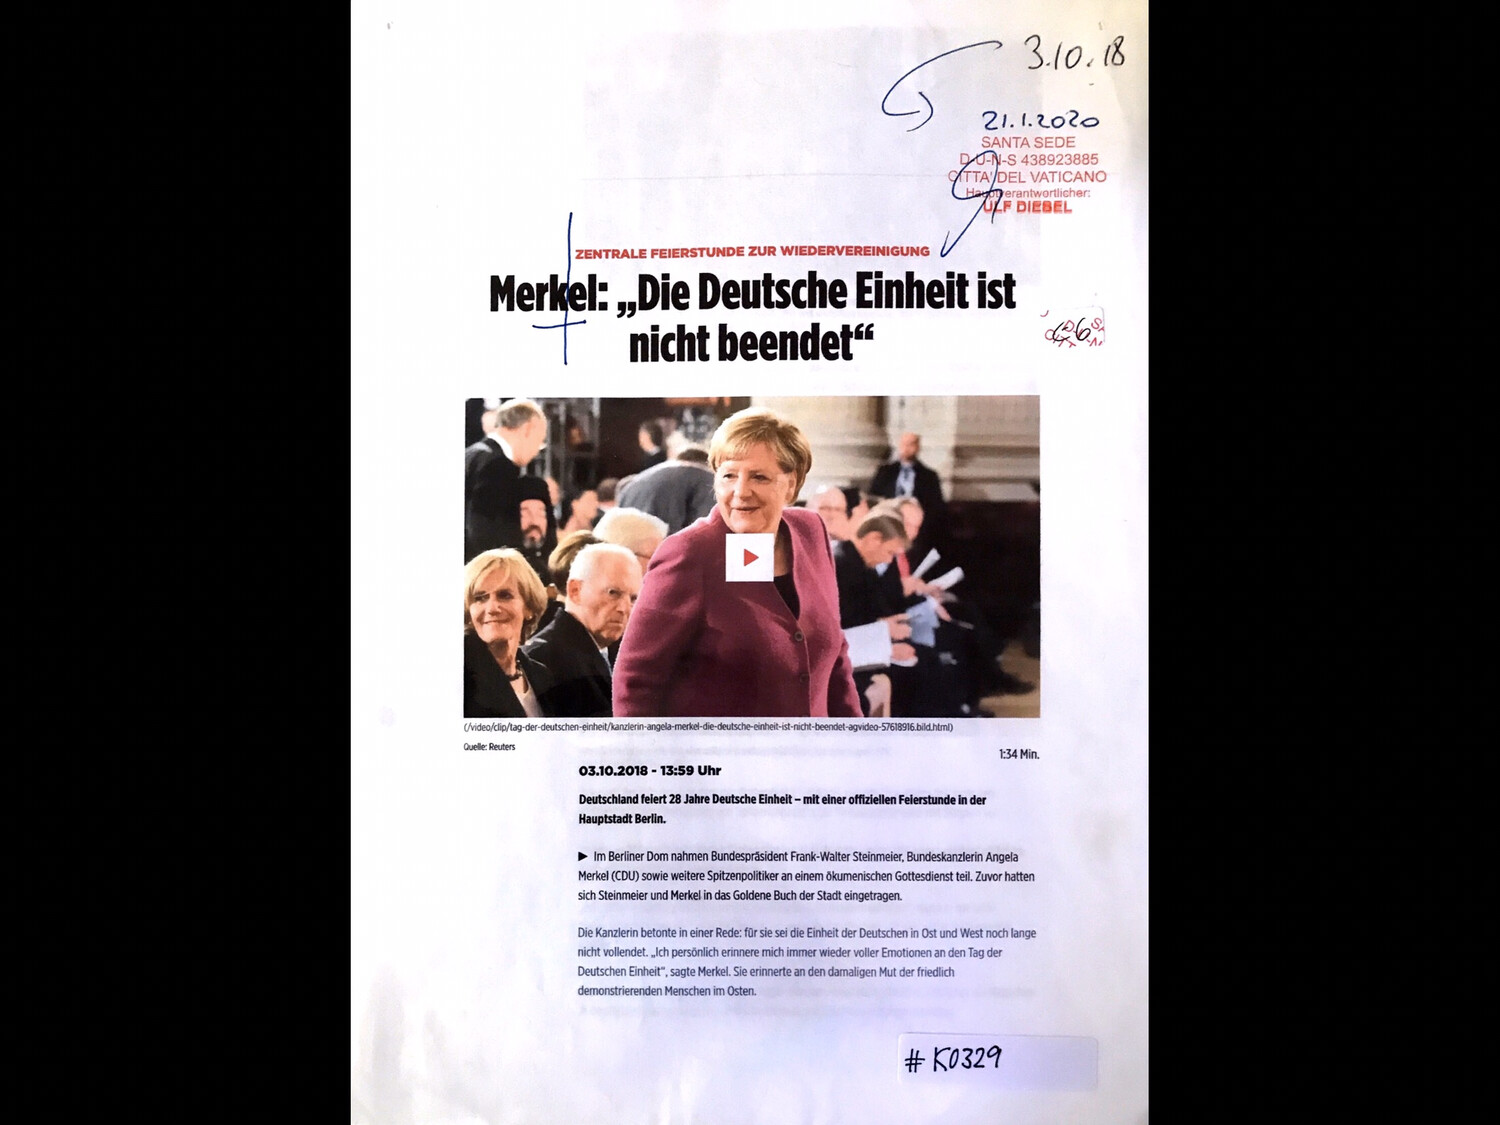 #K0329 l Reuters: Merkel: “Die Deutsche Einheit ist nicht beendet”